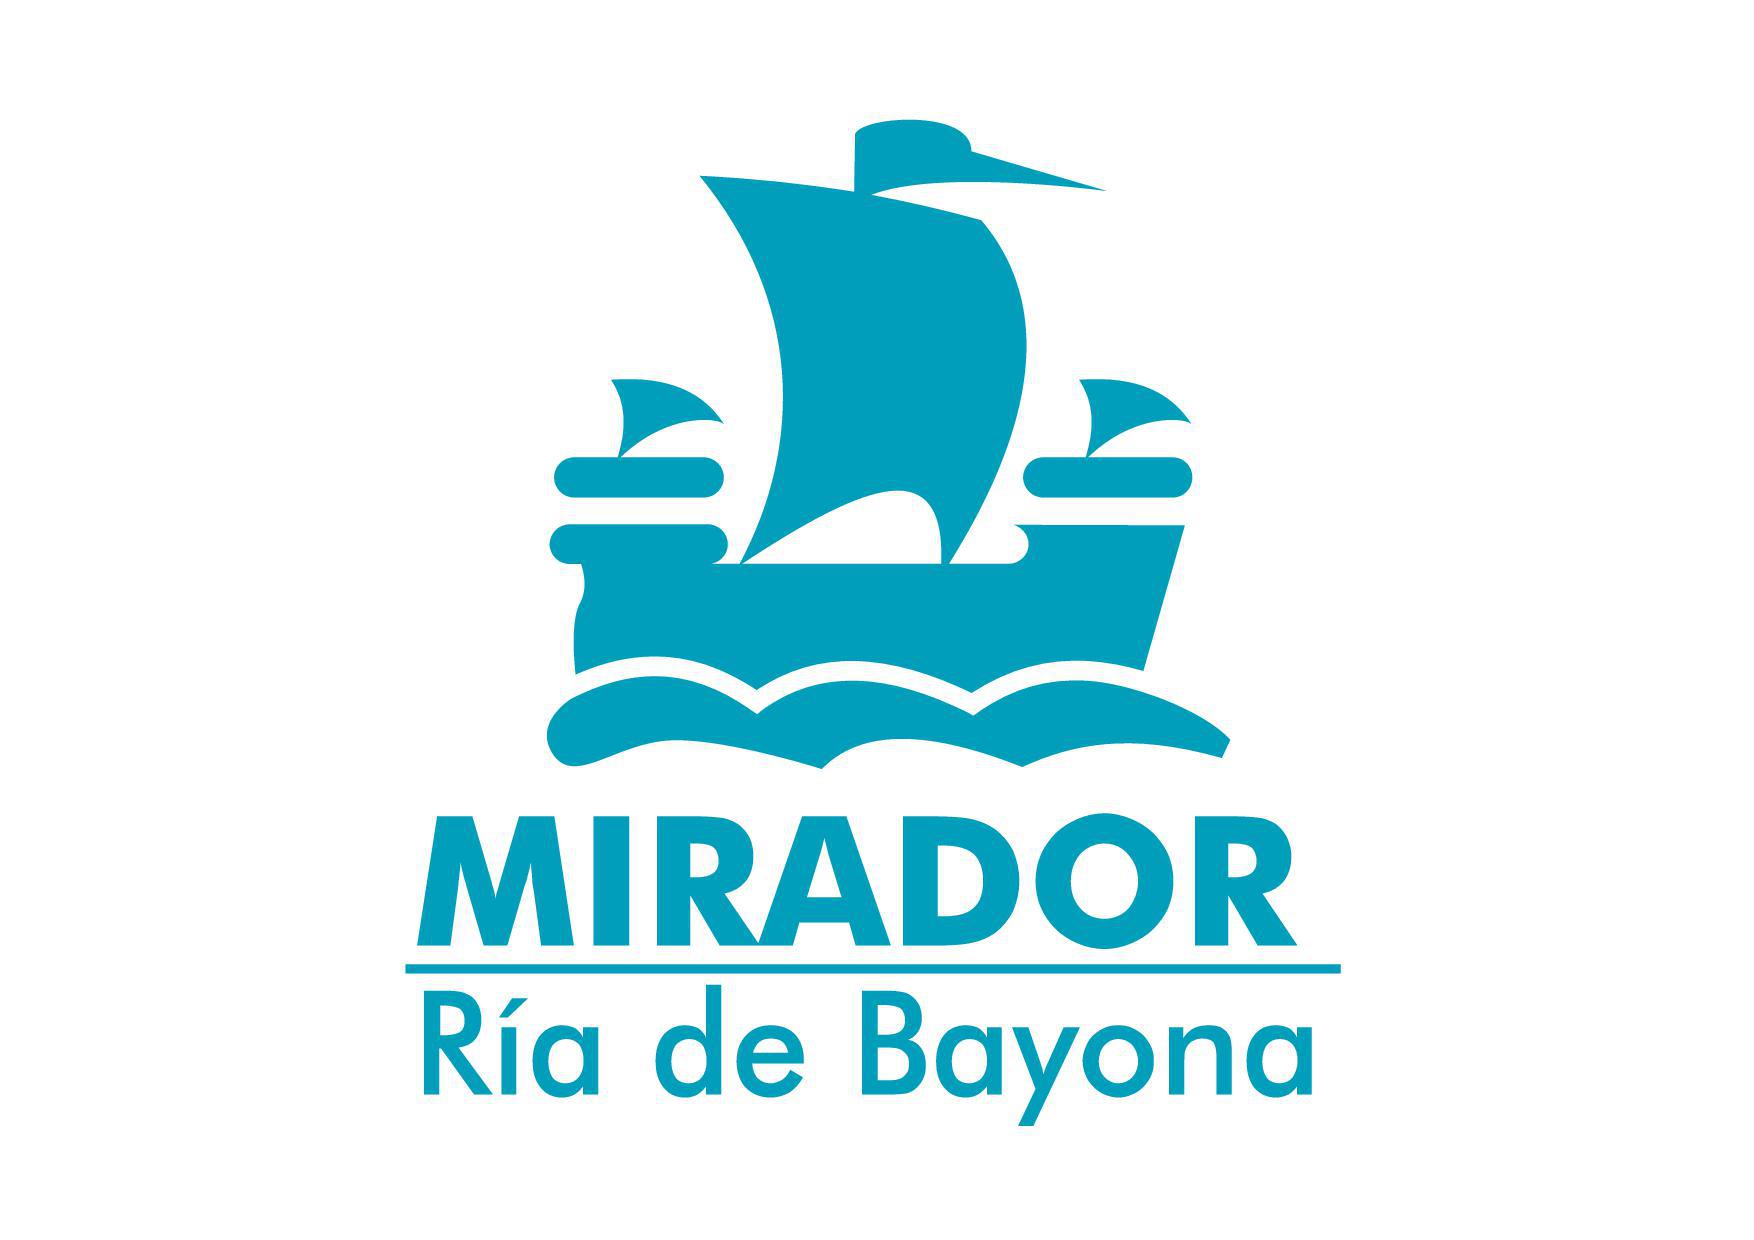 Images Mirador Ria De Bayona